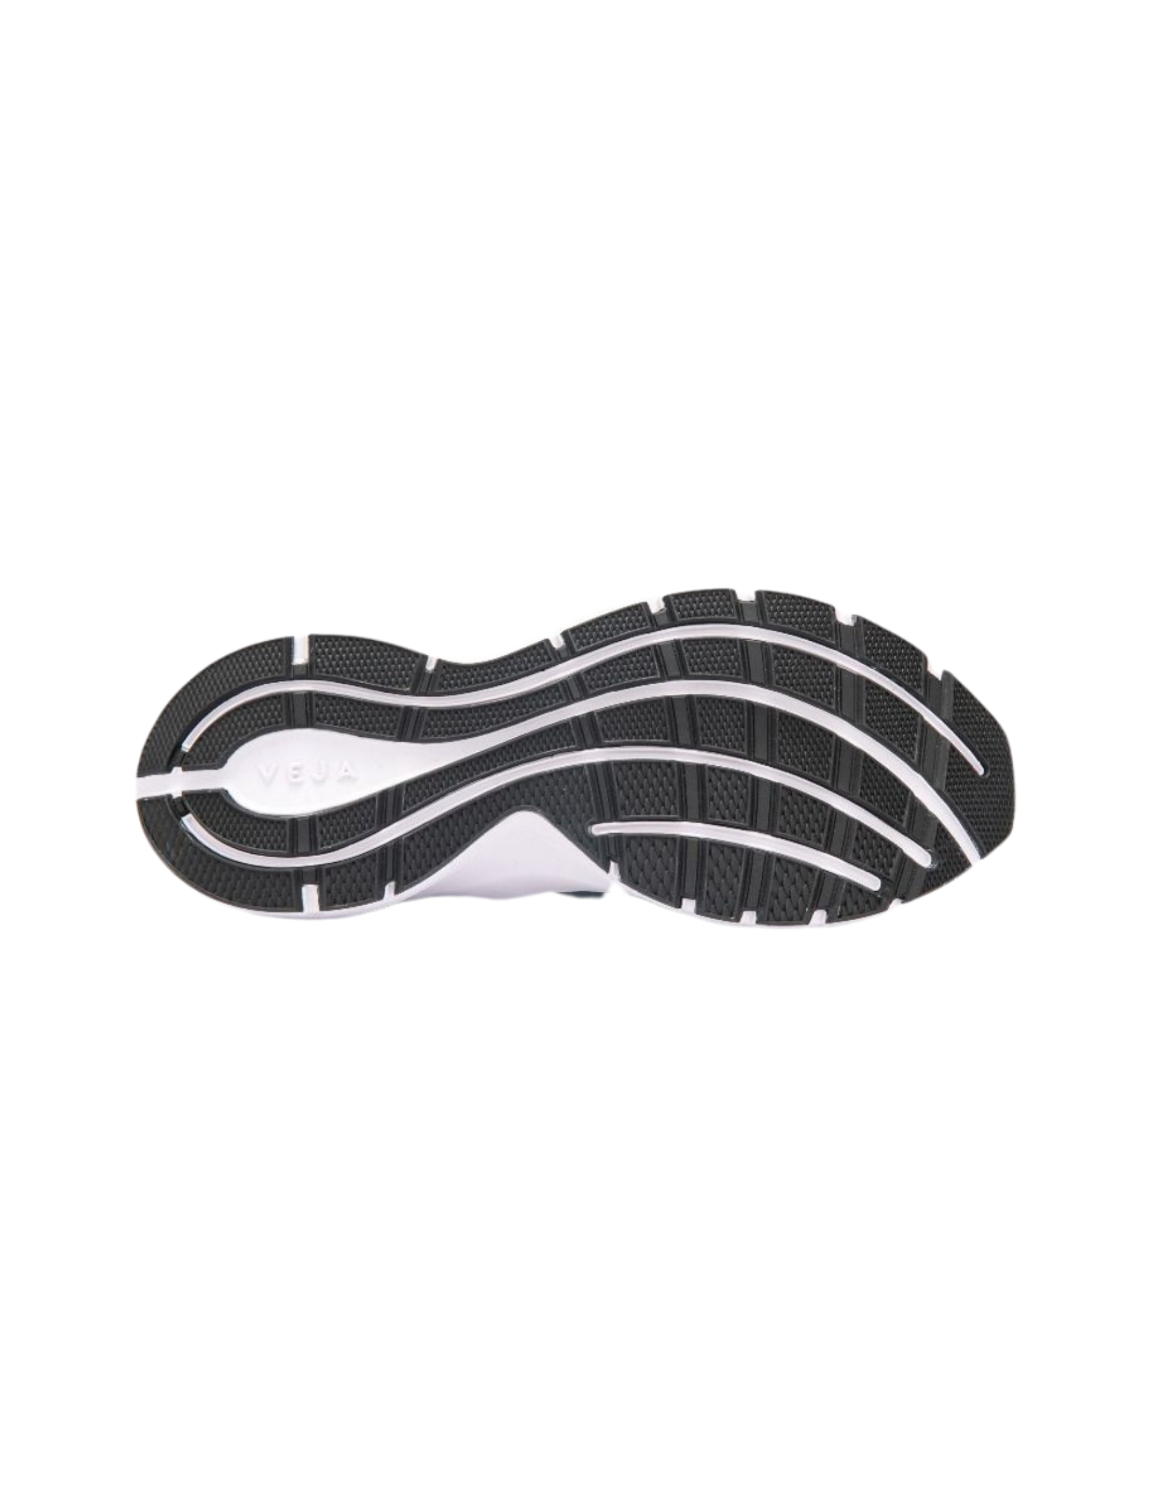 Chaussures de Running Veja Marlin V-Knit Femme Gris/Noir, vue semelle